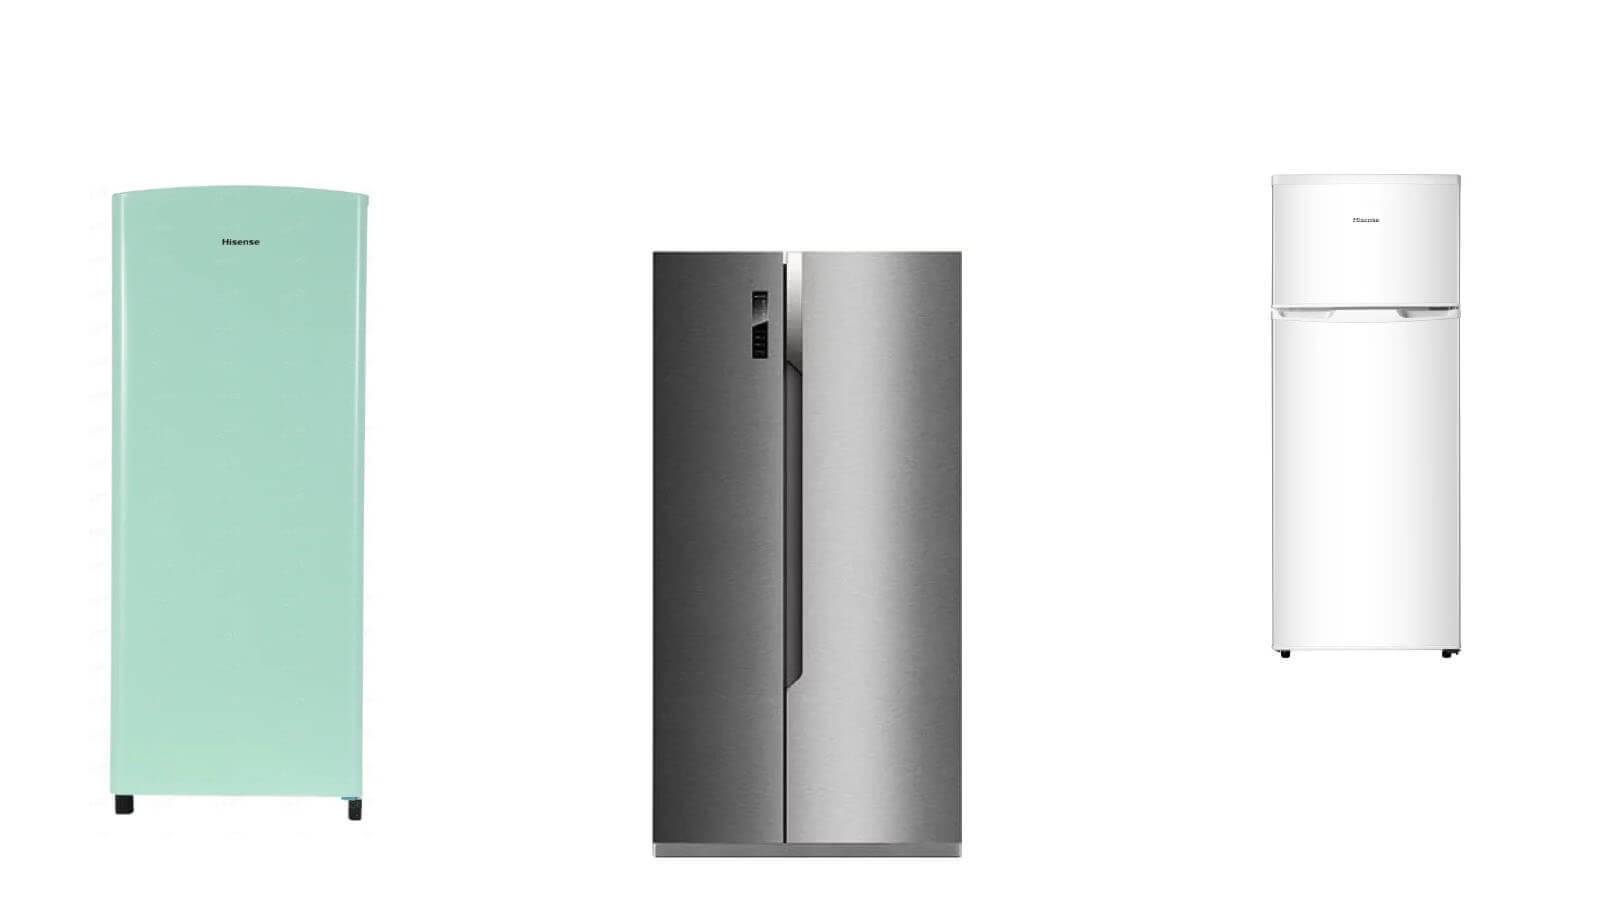 Атлант, бирюса, indesit – какой холодильник лучше и почему